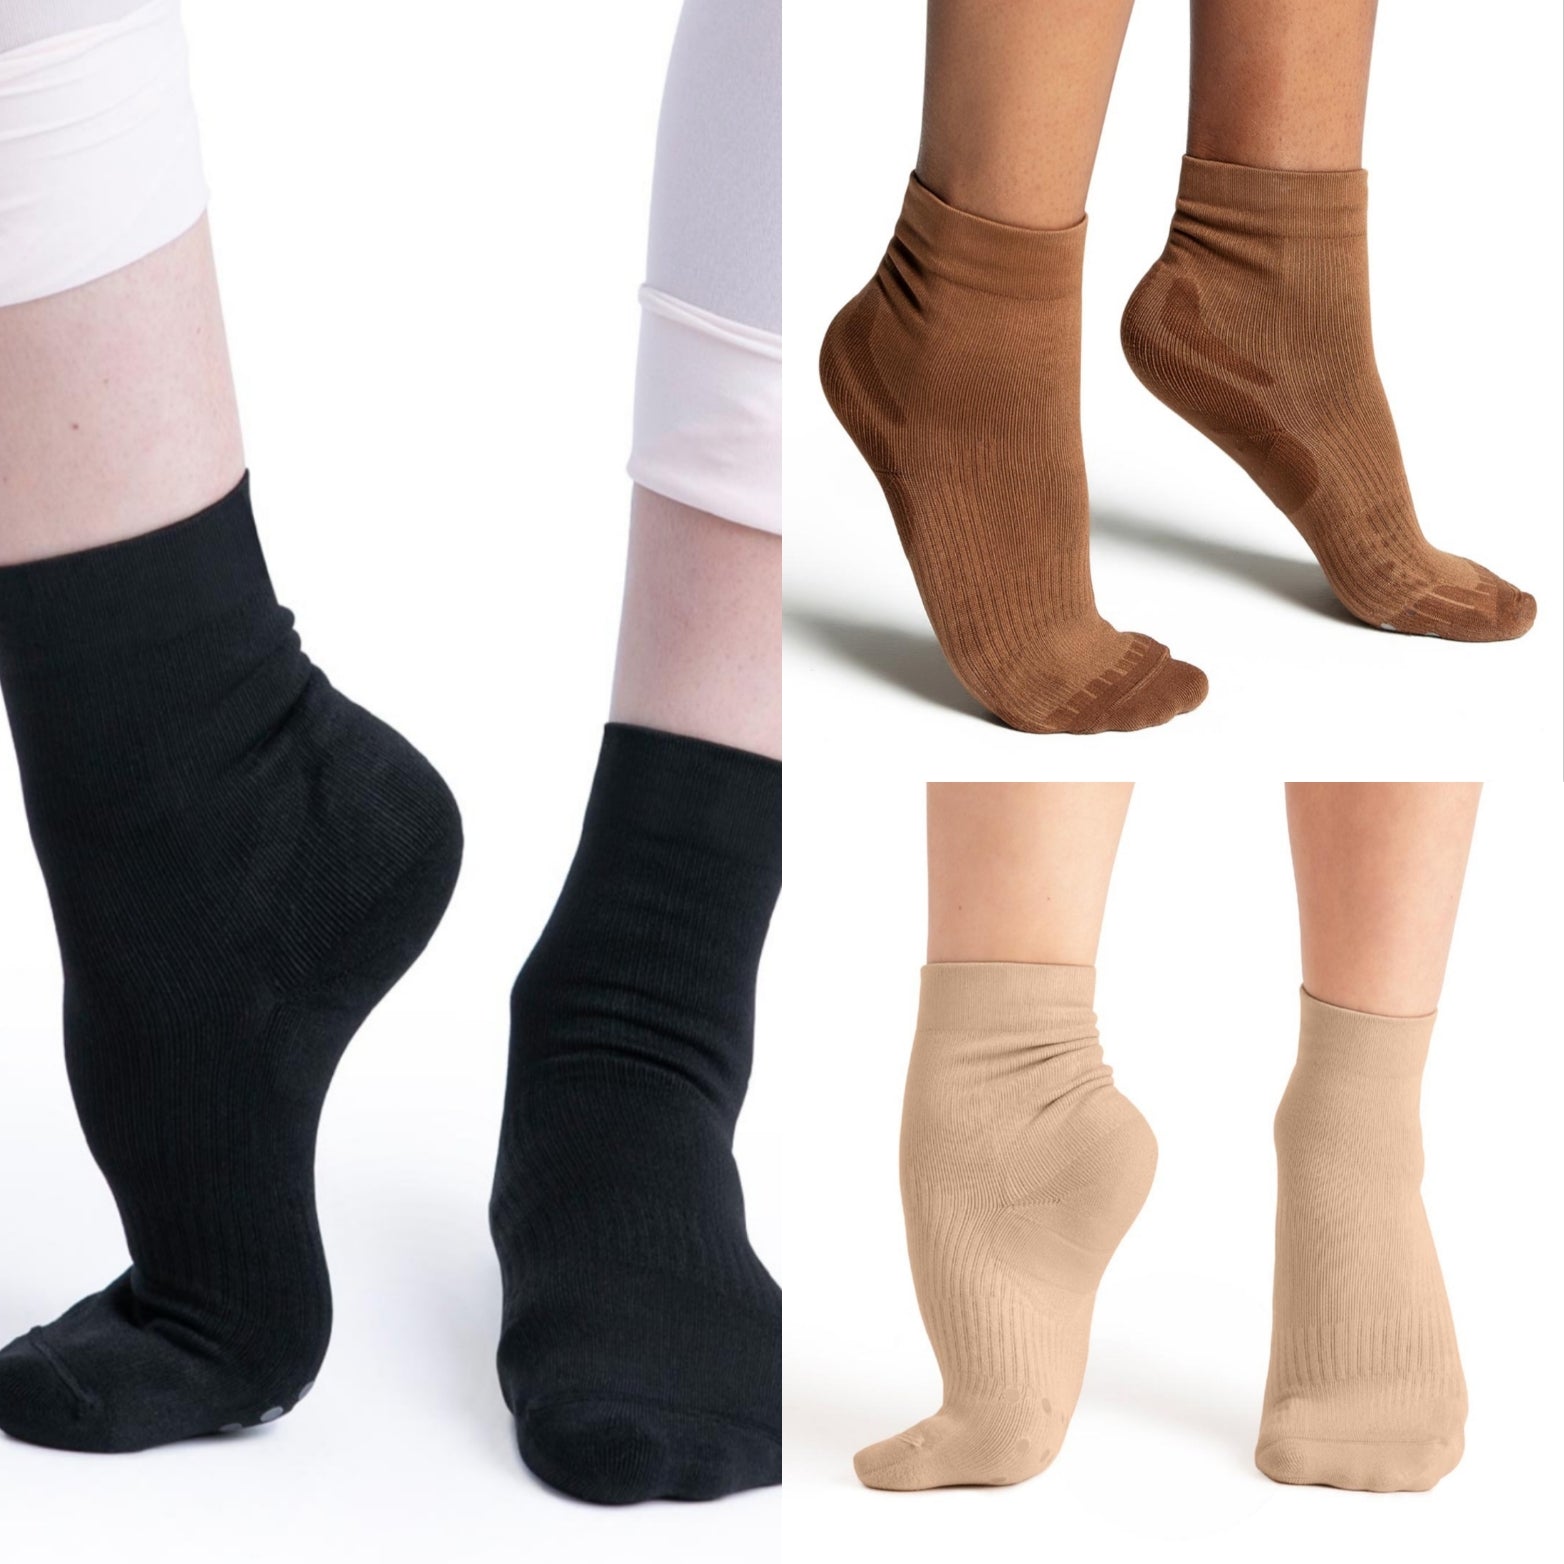 Womens Lifeknit Sox Dance Socks - Accessories